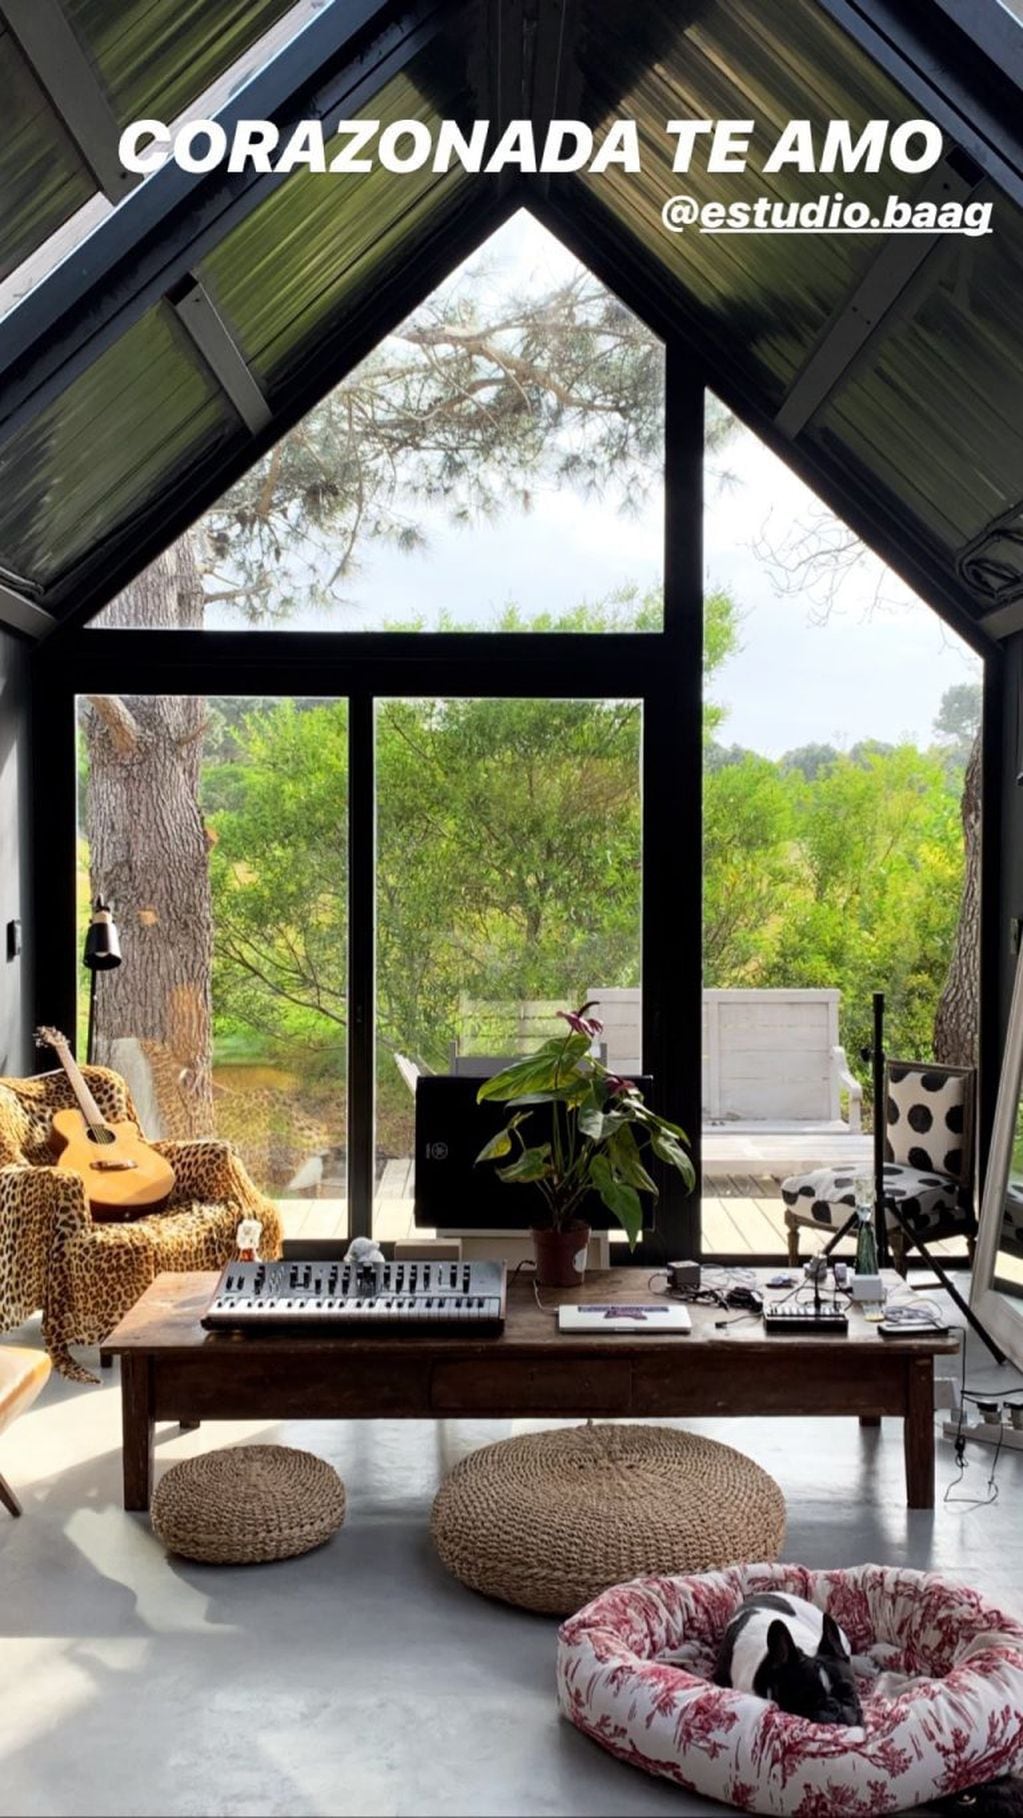 La casa autosustentable de Calu Rivero, posee ventanas en los techos y paredes de cada ambiente para lograr una ventilación cruzada e iluminación natural (Foto: Instagram)